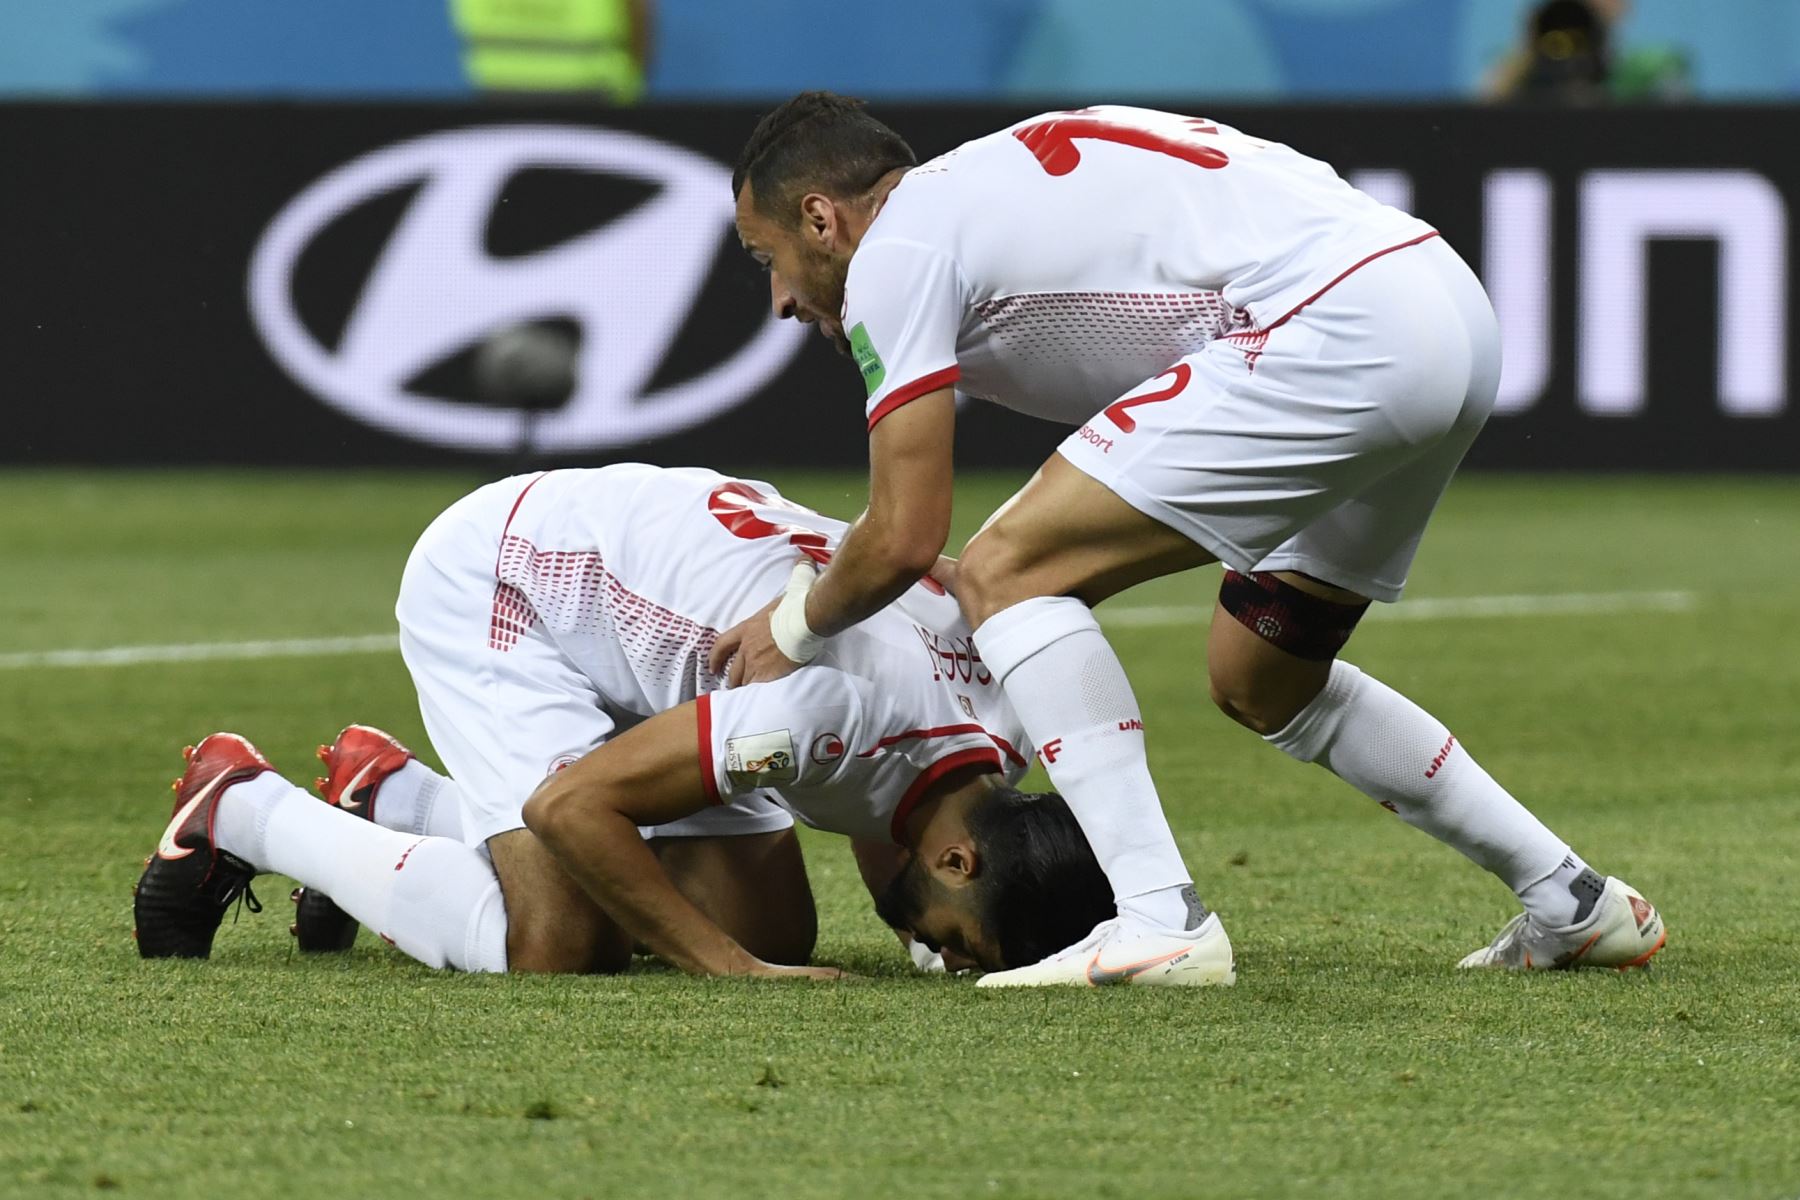 El centrocampista de Túnez Ferjani Sassi (L) celebra un gol durante el partido de fútbol de la Copa del Mundo Rusia 2018 Grupo G entre Túnez e Inglaterra.AFP